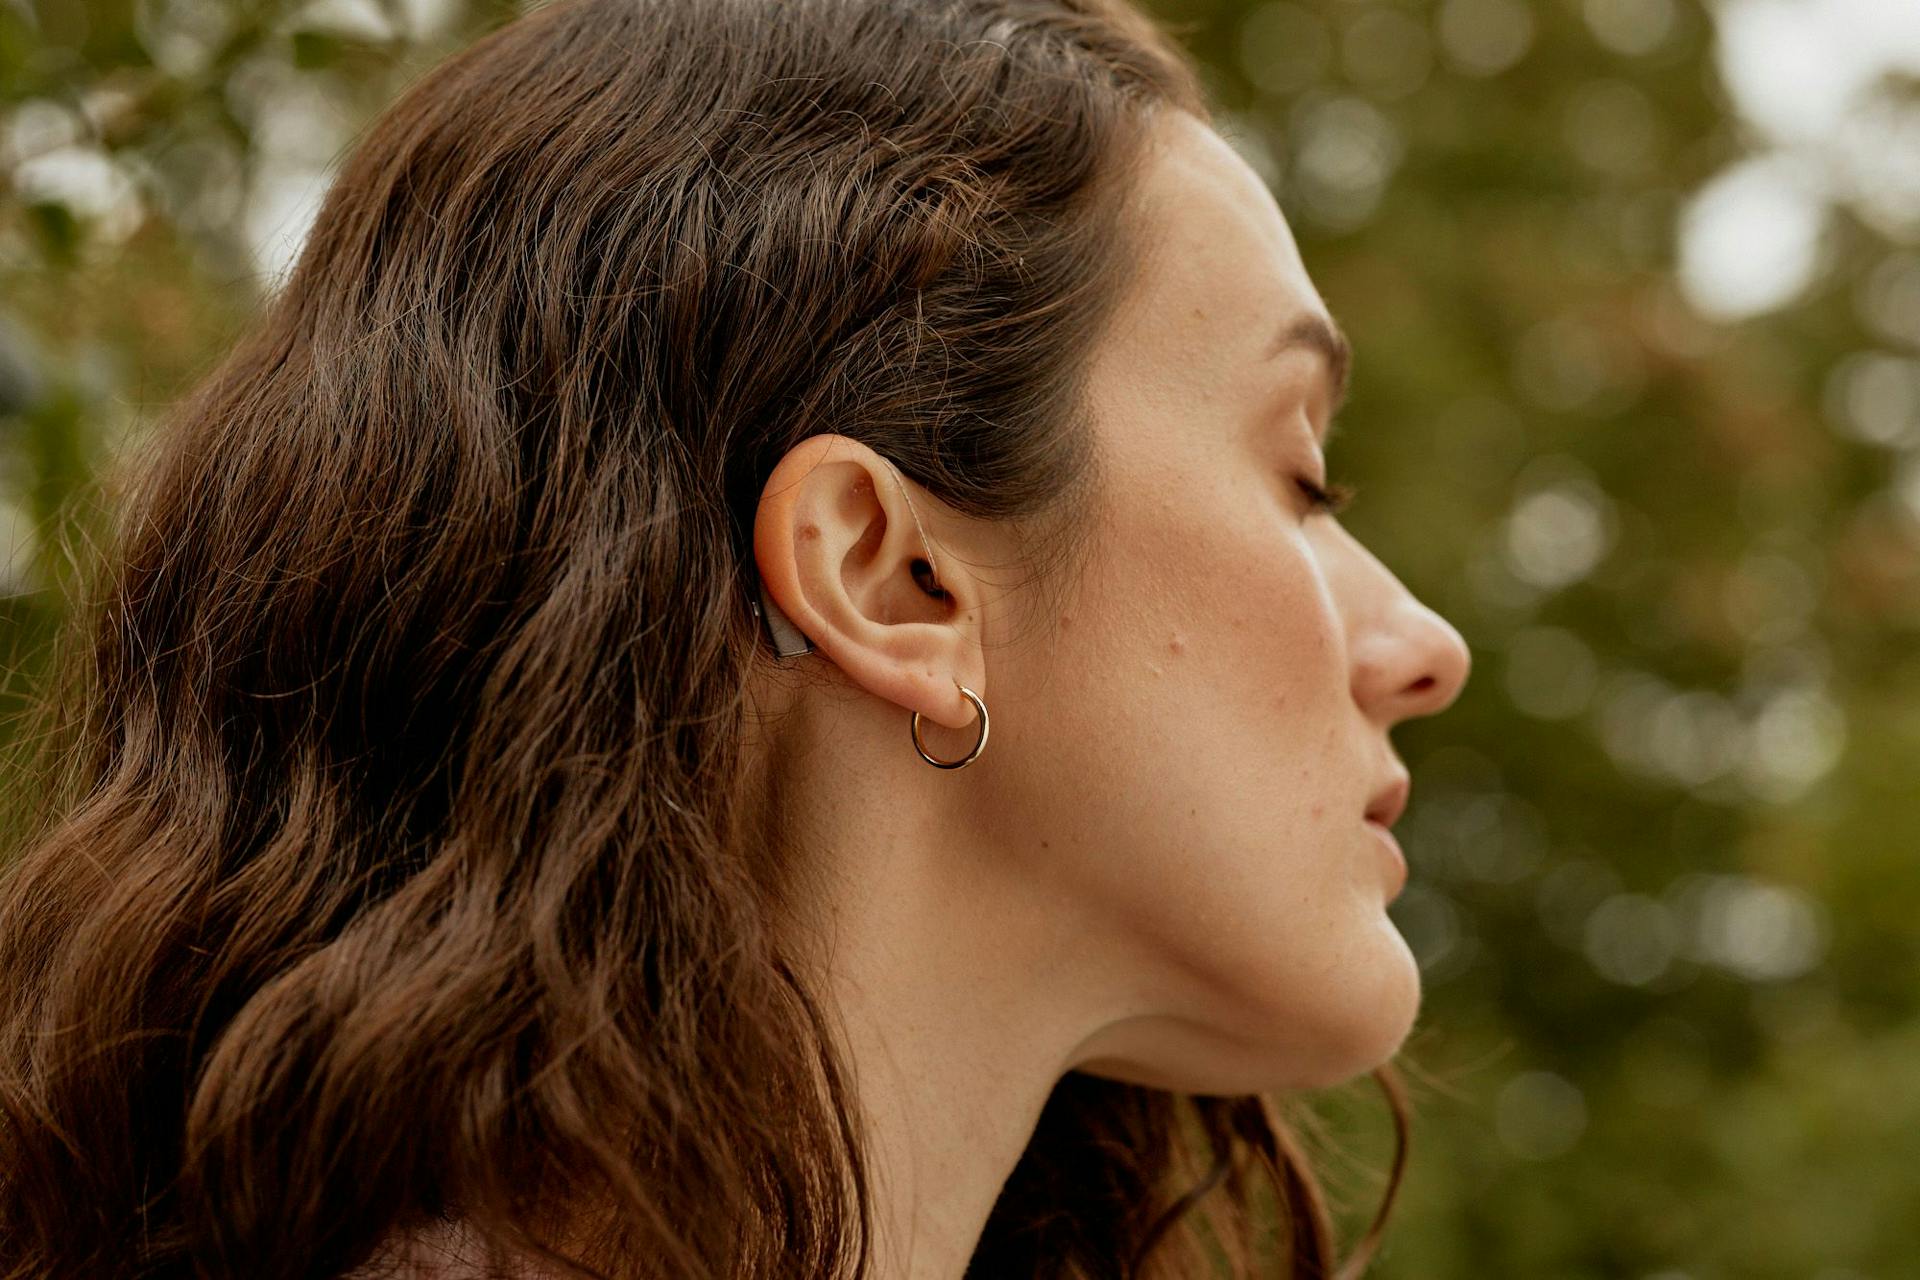 Mørkhåret kvinne i profil med synlig høreapparat